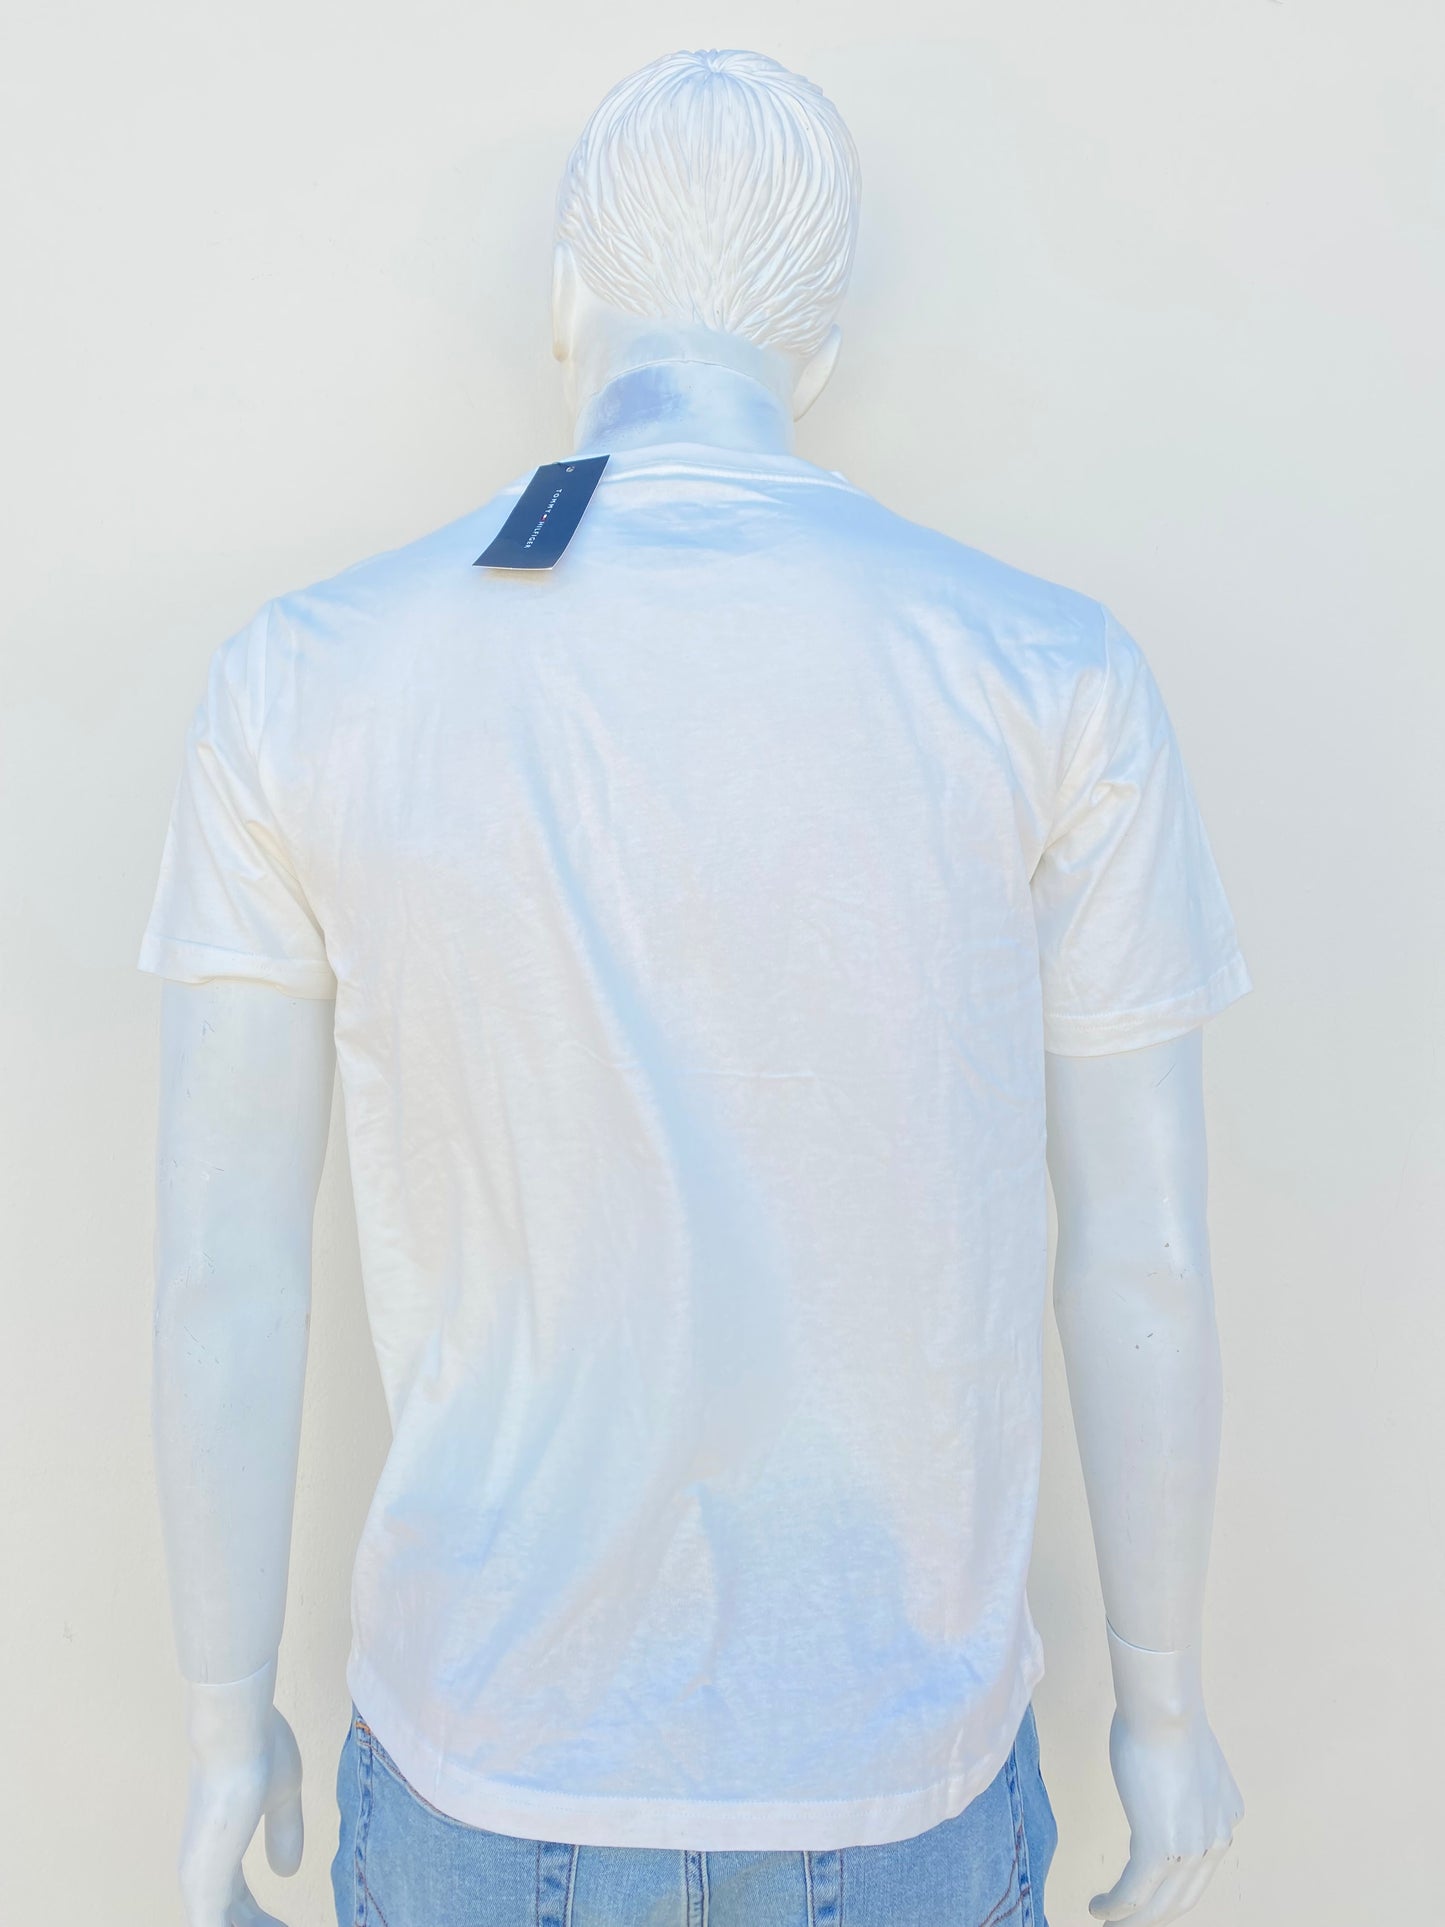 T-shirt Tommy Hilfiger original, blanco con letras de la marca azul oscuro.